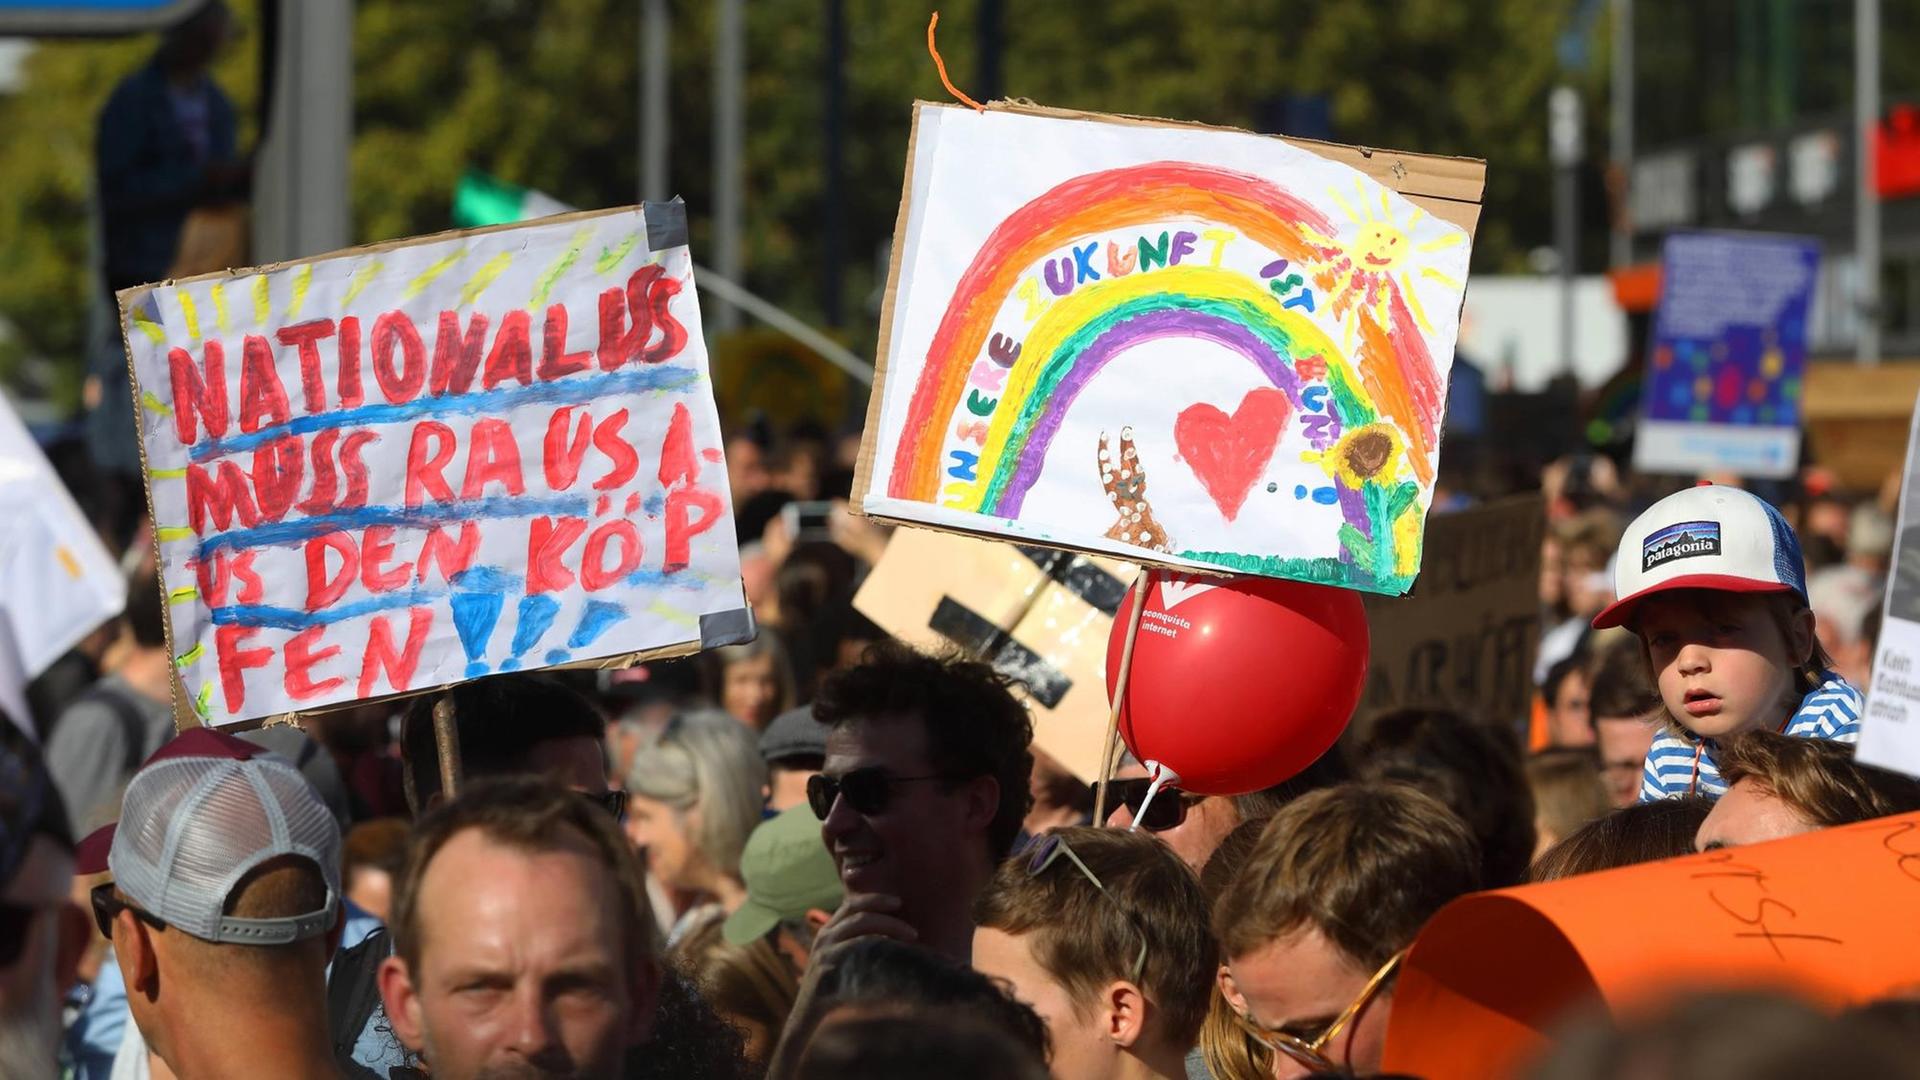 Großkundgebung Unteilbar - Solidarität statt Ausgrenzung - Zehntausende protestieren gegen Rassimus - Für eine freie Geselllschaft - Berlin, Deutschland, 13.10.2018